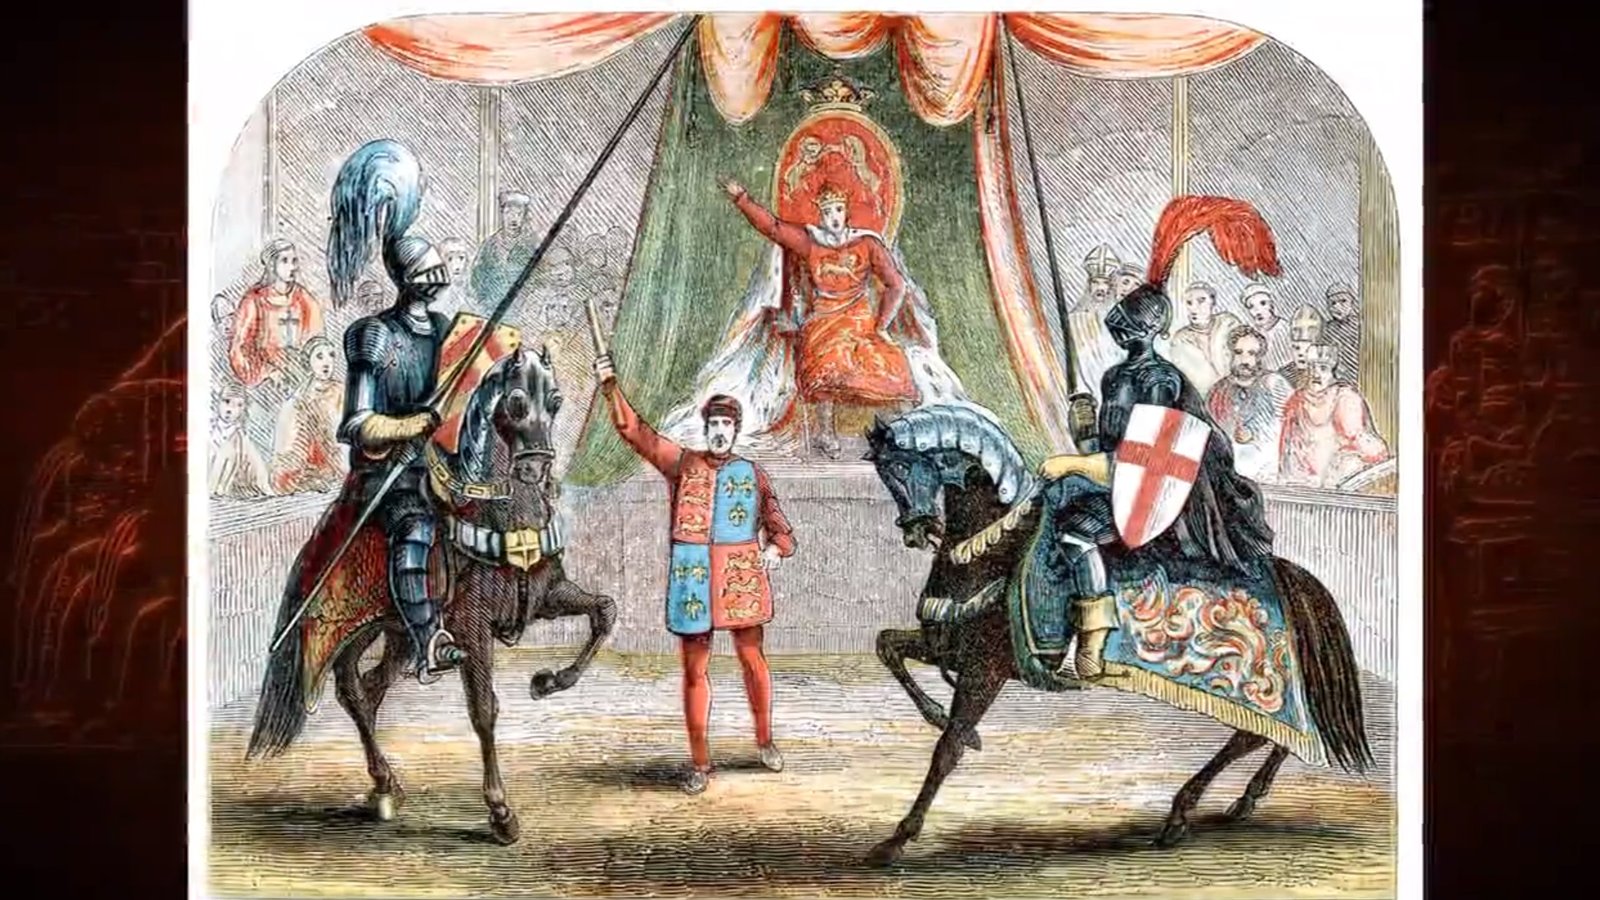 The Deposition of Richard II